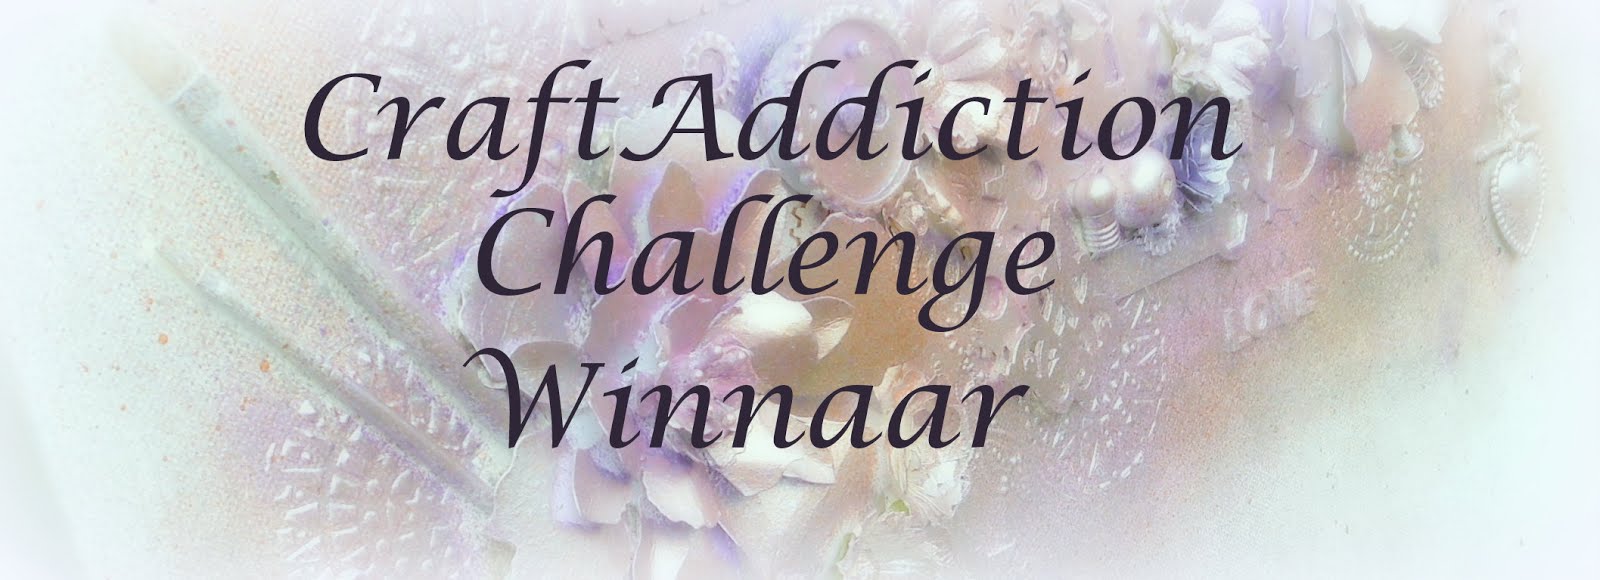 Winnaar challenge Herfst bij Craft Addiction